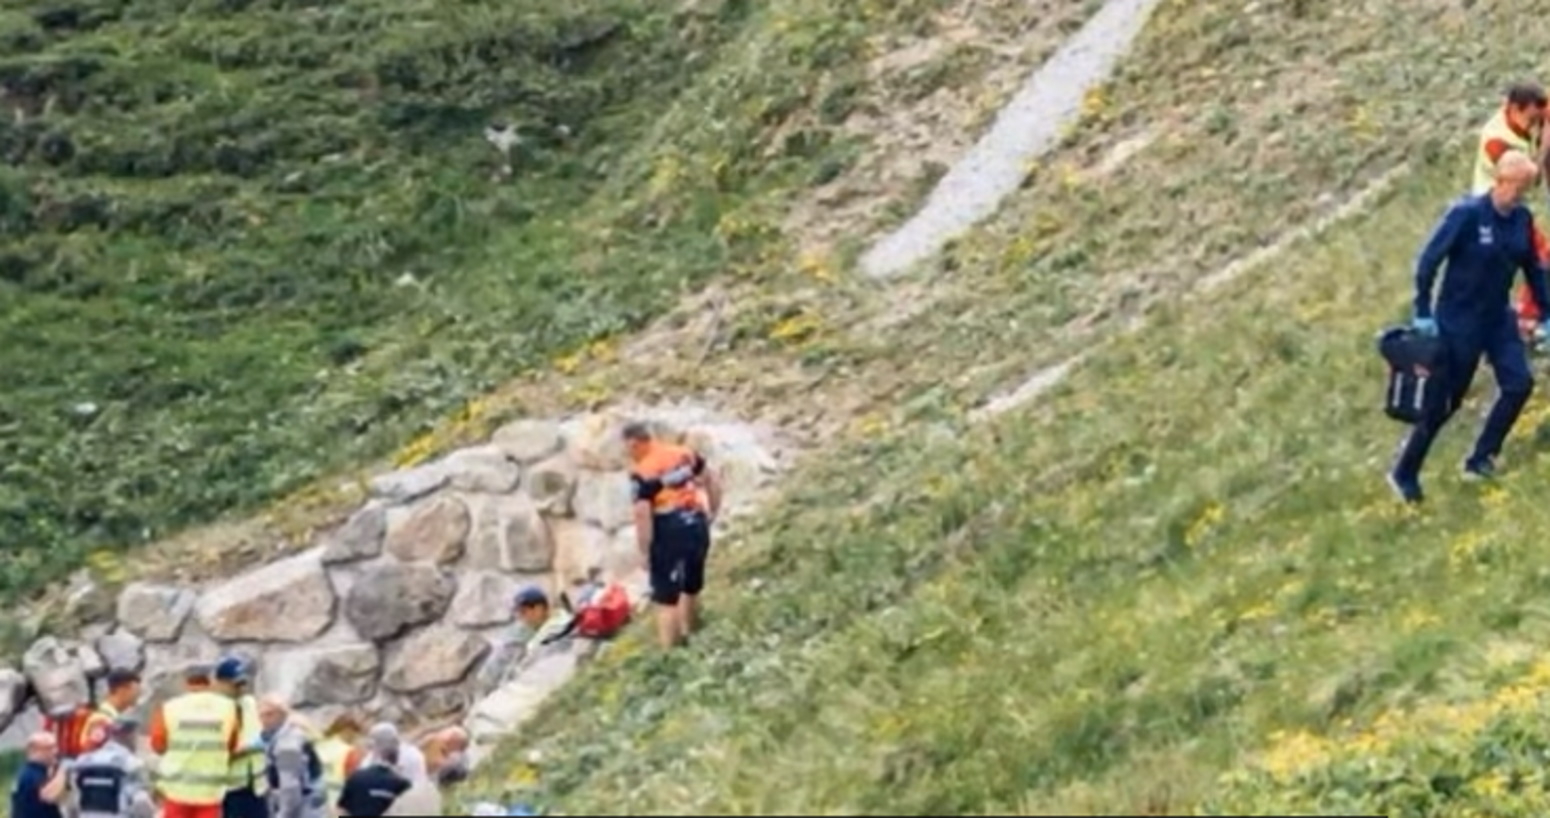 Νεκρός αθλητής ύστερα από δυστύχημα στον ποδηλατικό γύρο της Ελβετίας